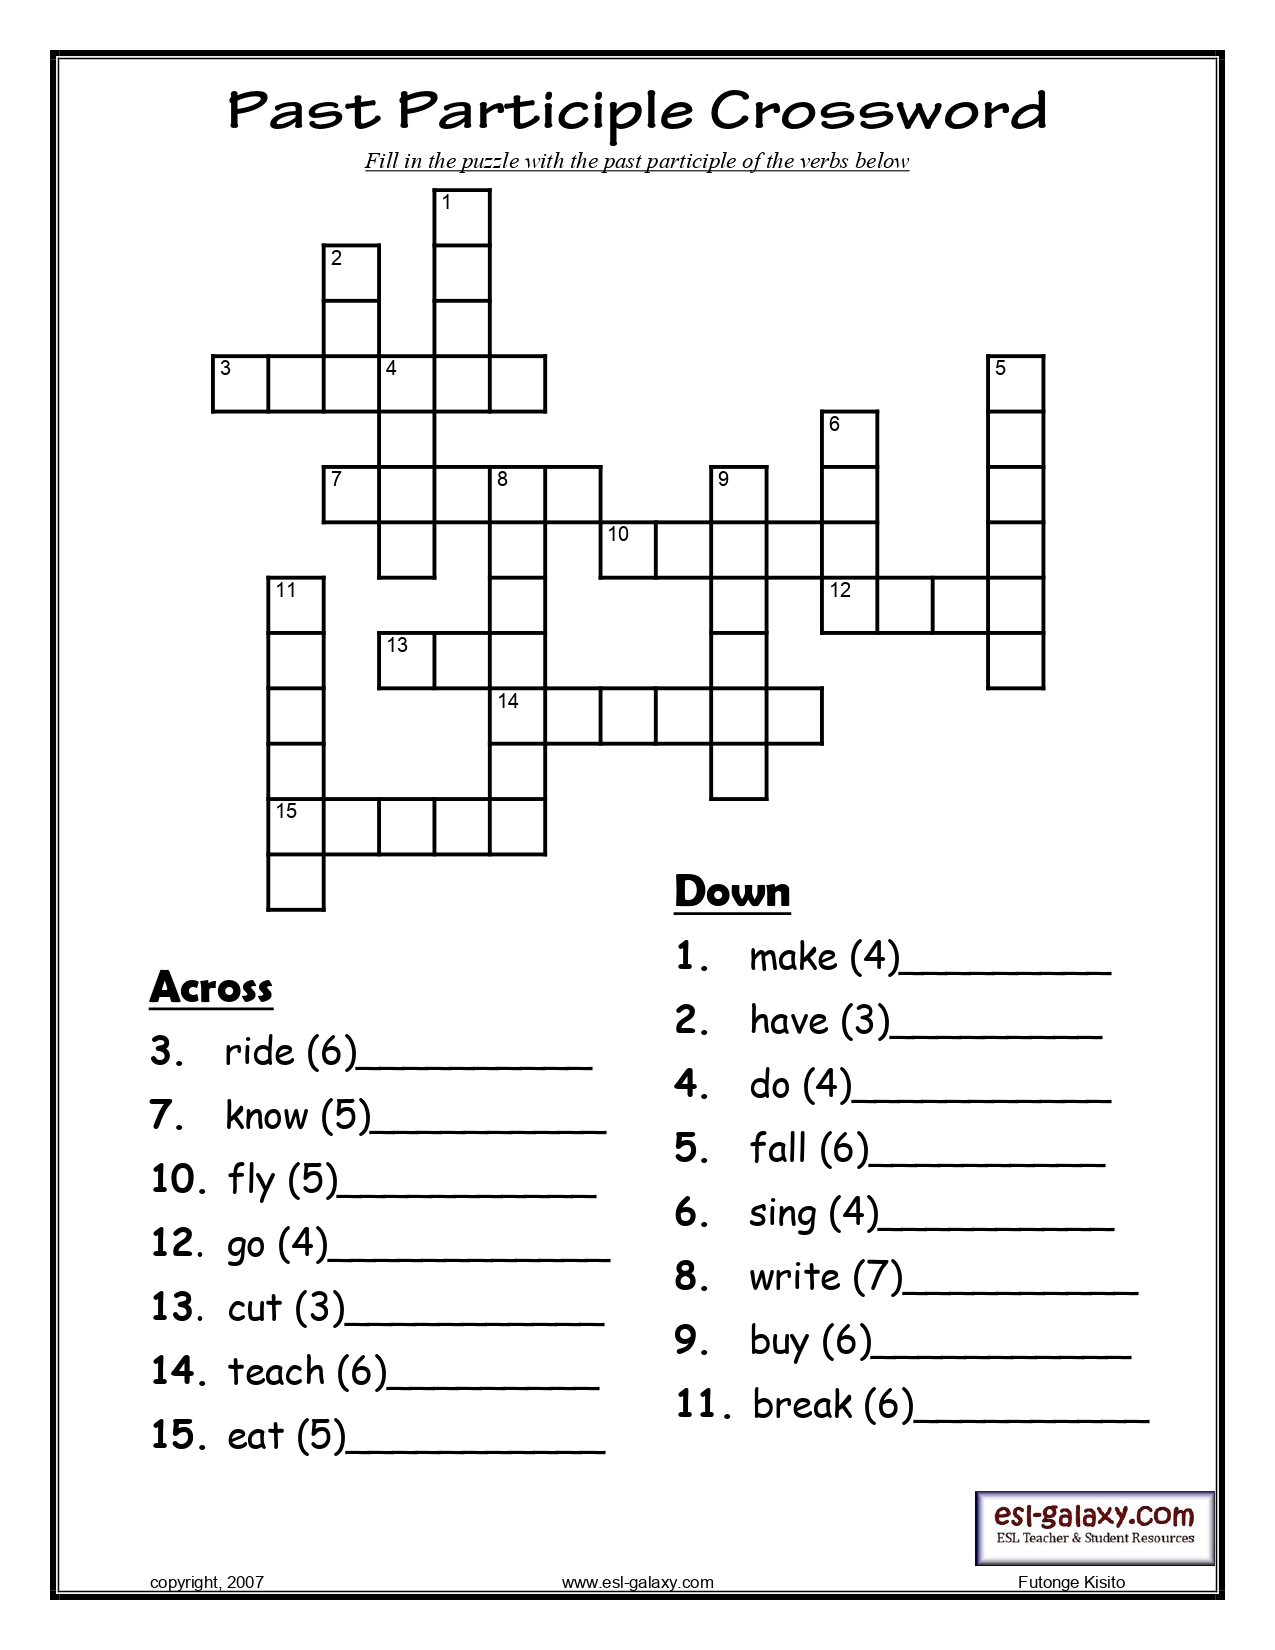 Simpler crossword